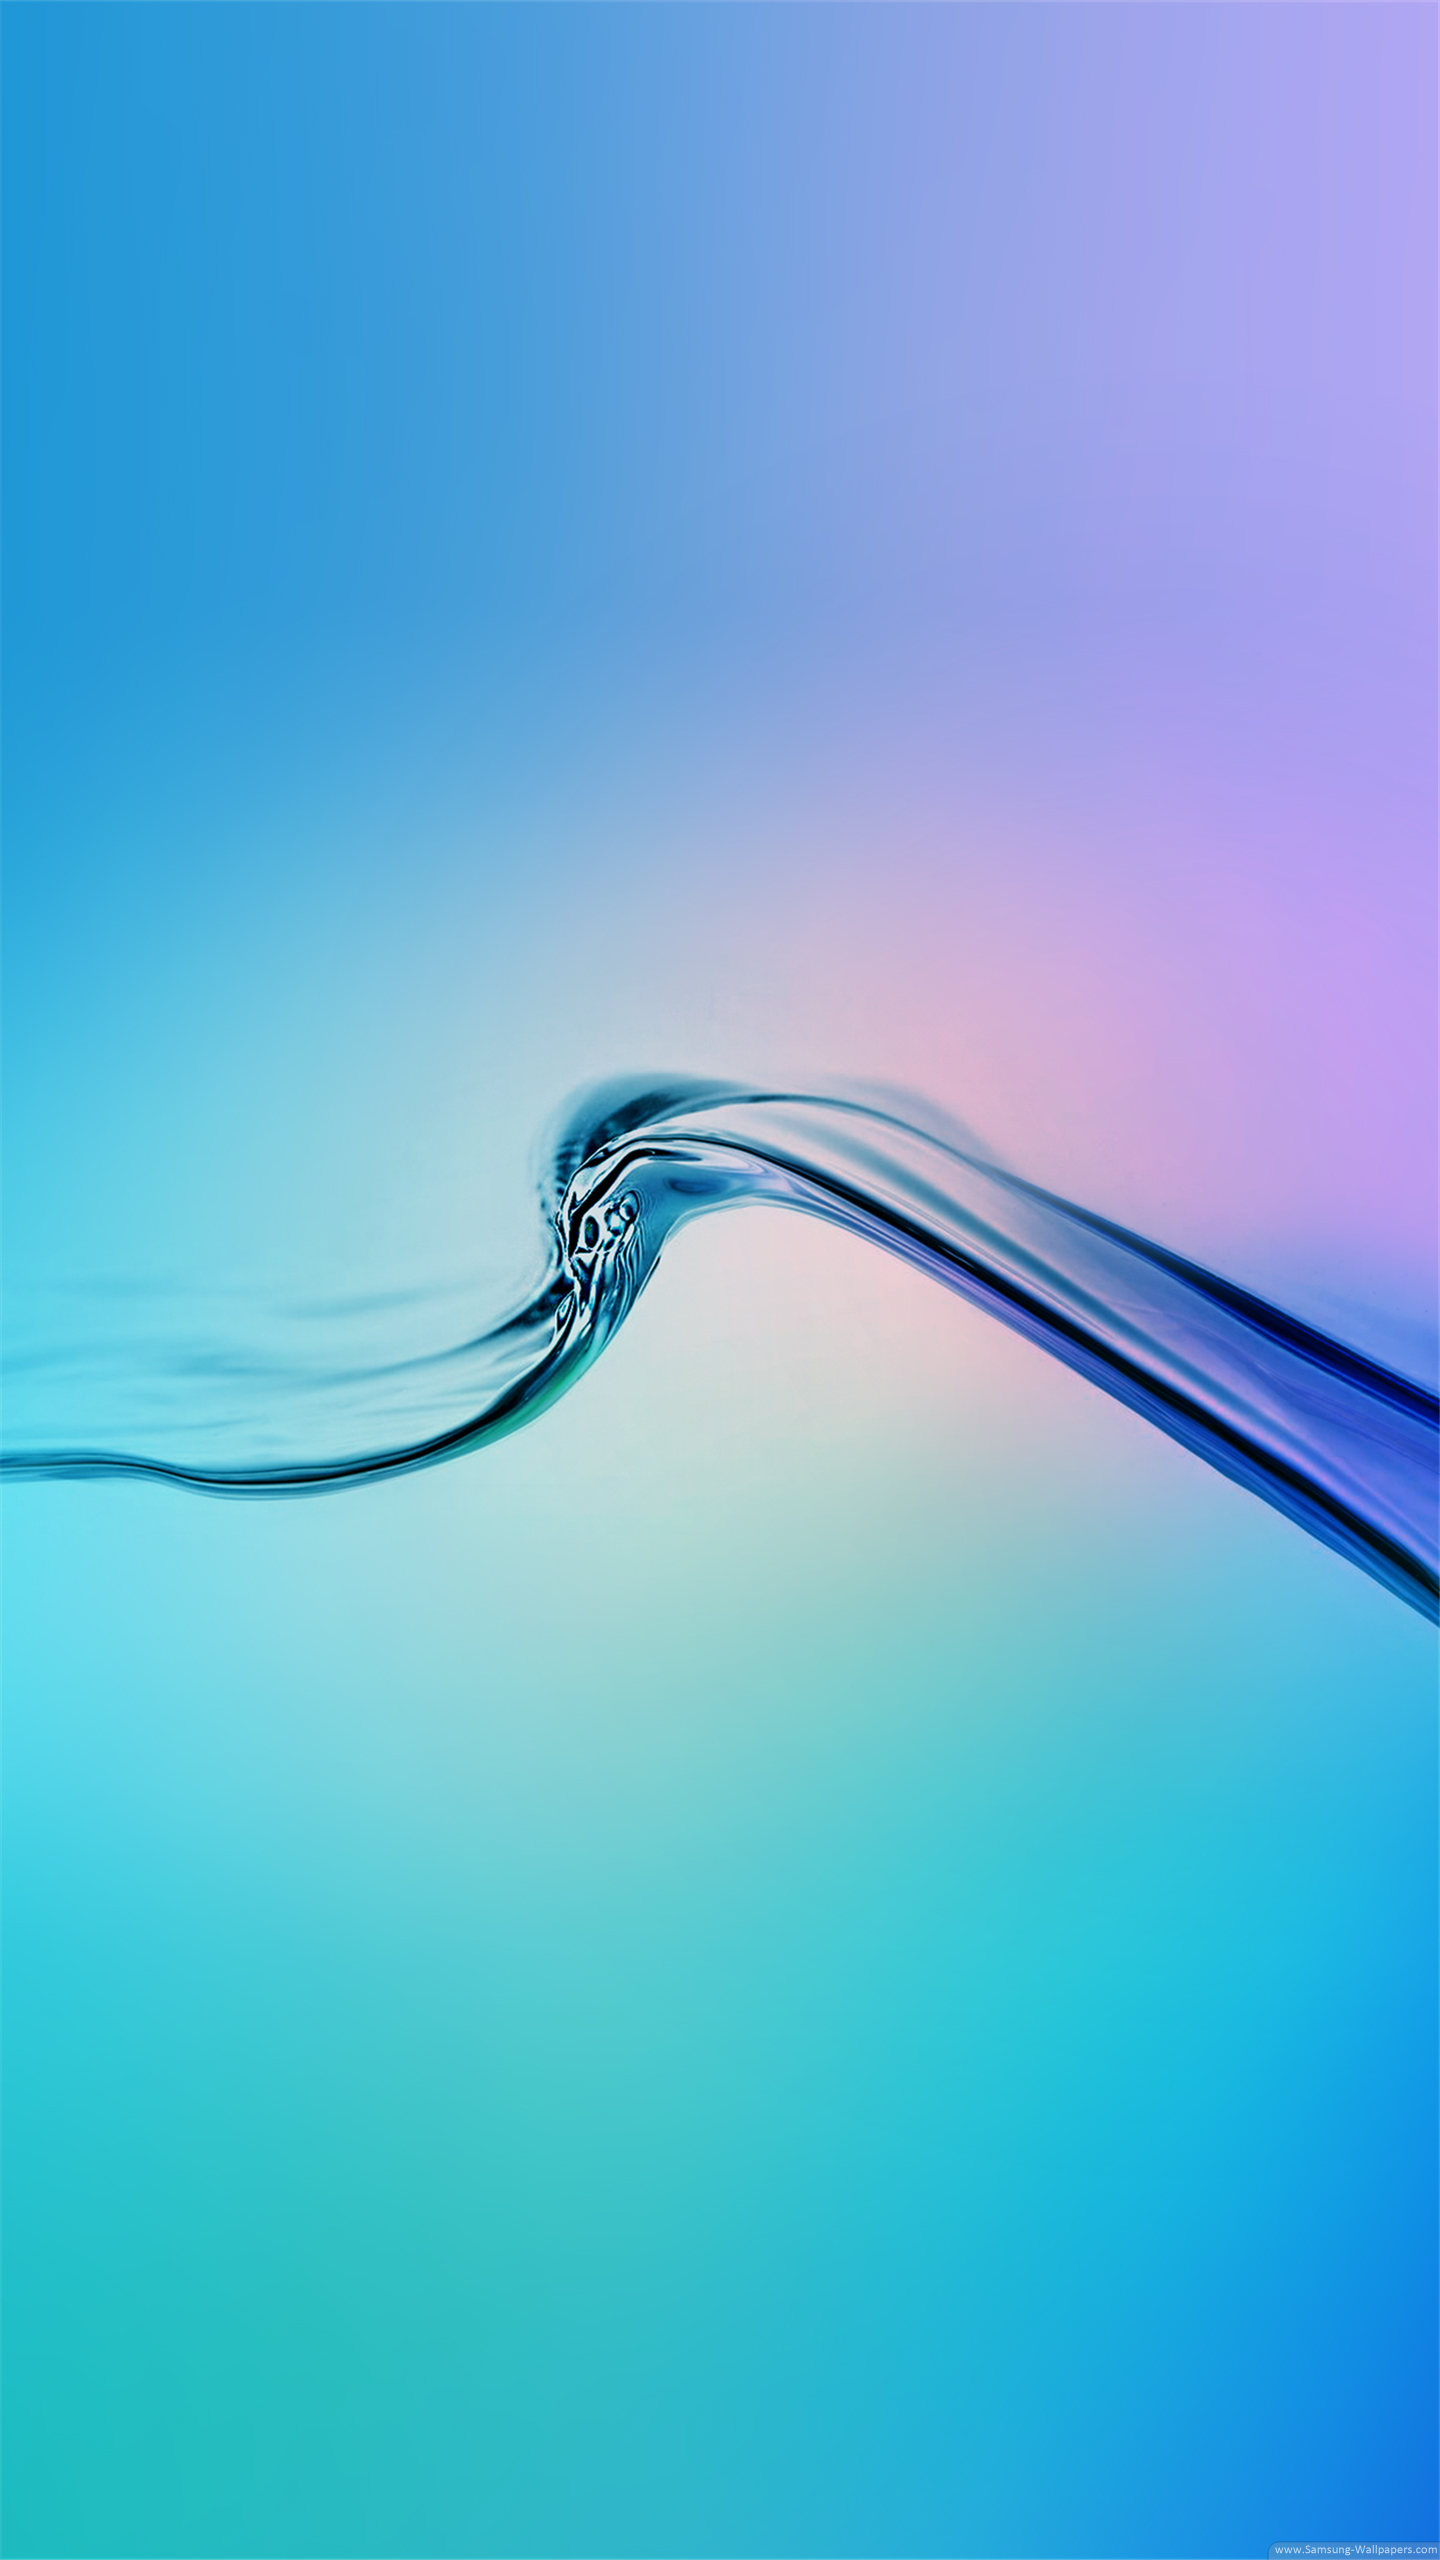 fond d'écran samsung s6 edge,bleu,l'eau,aqua,liquide,turquoise